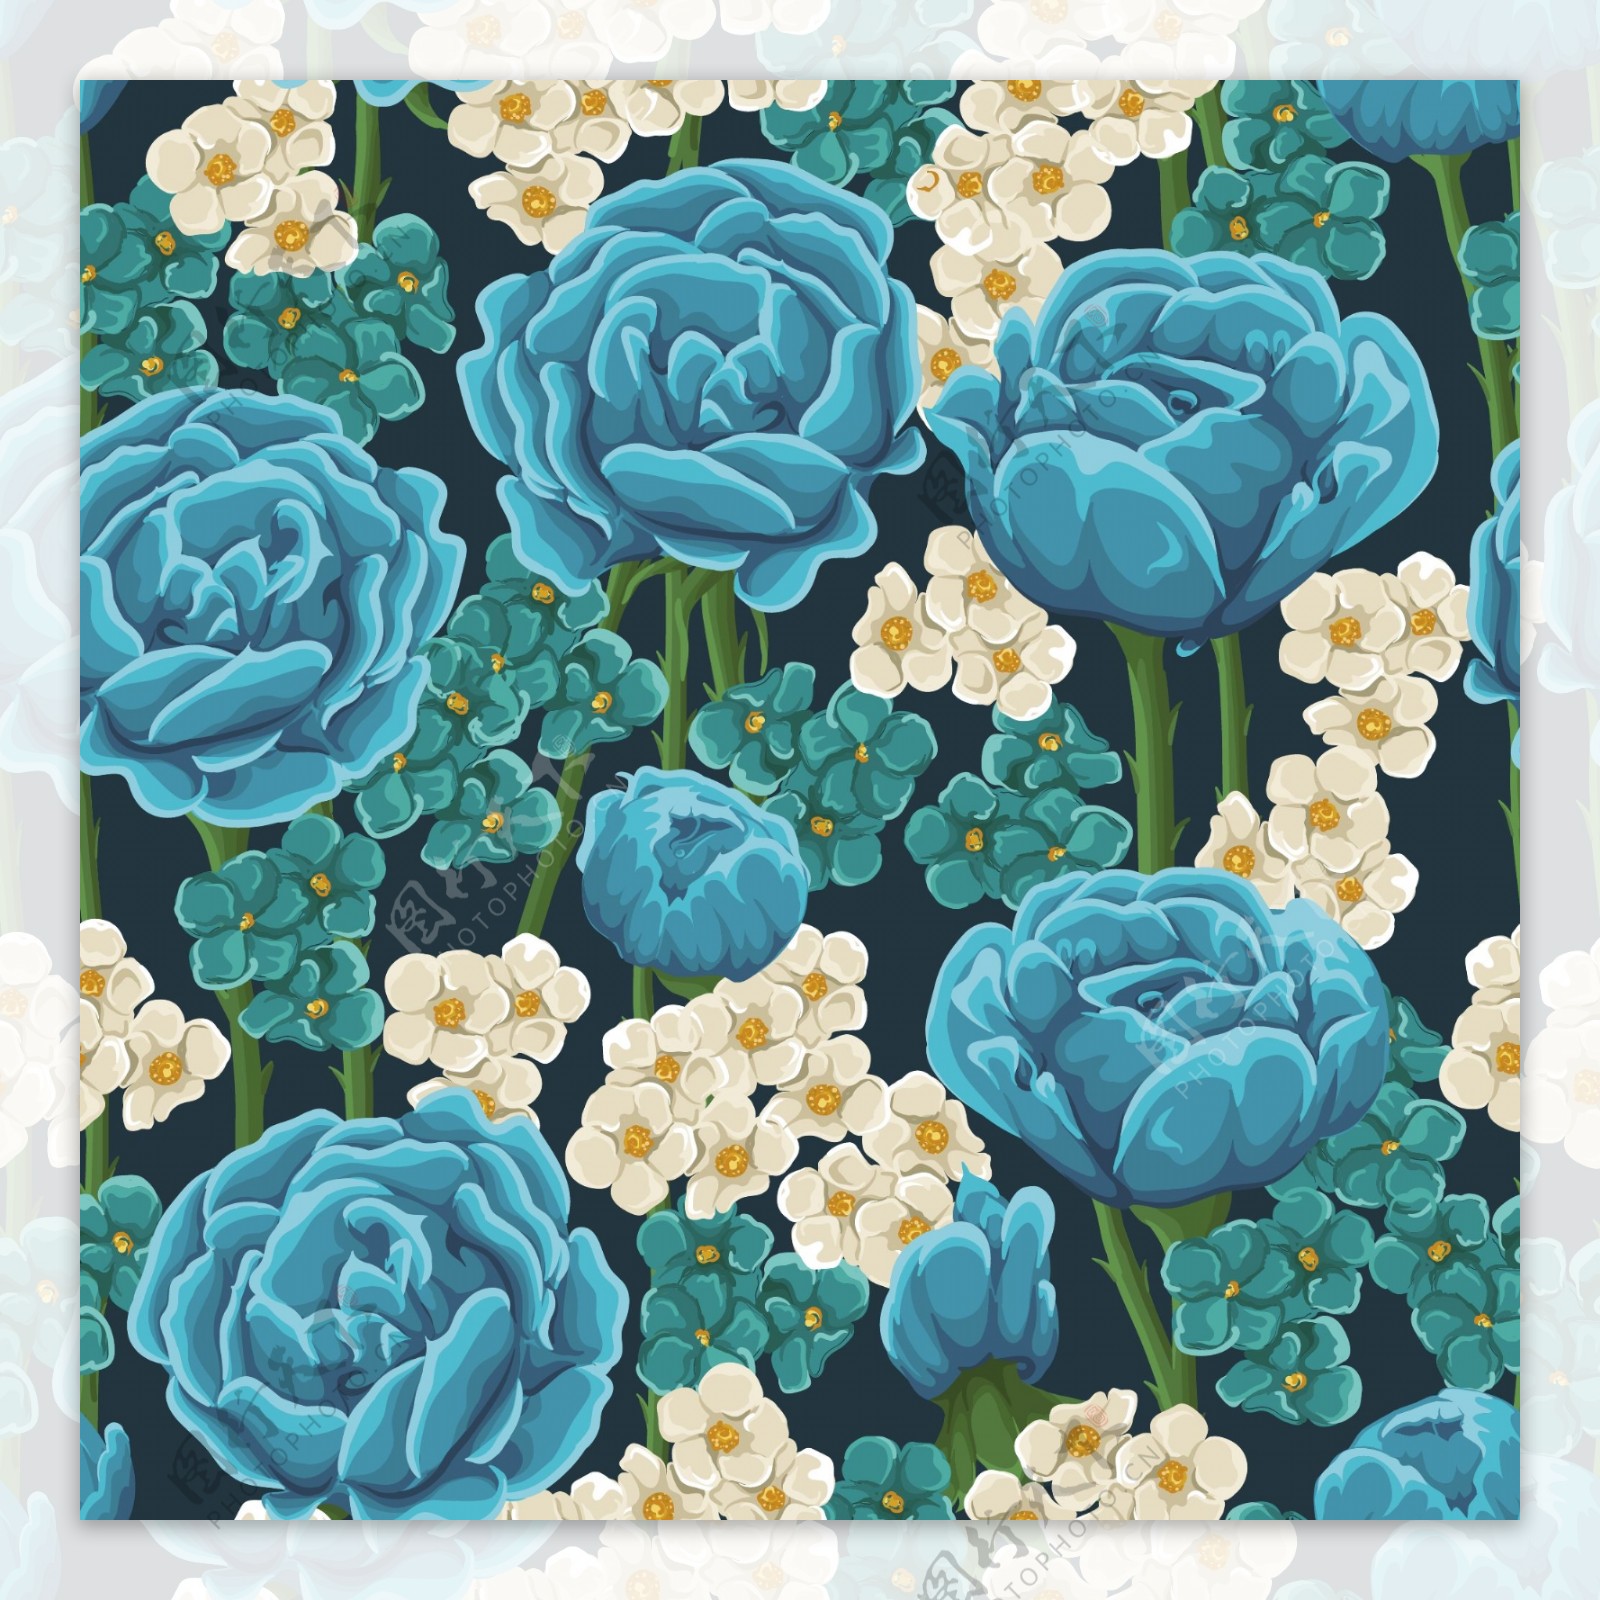 蓝玫瑰花卉无缝背景矢量素材